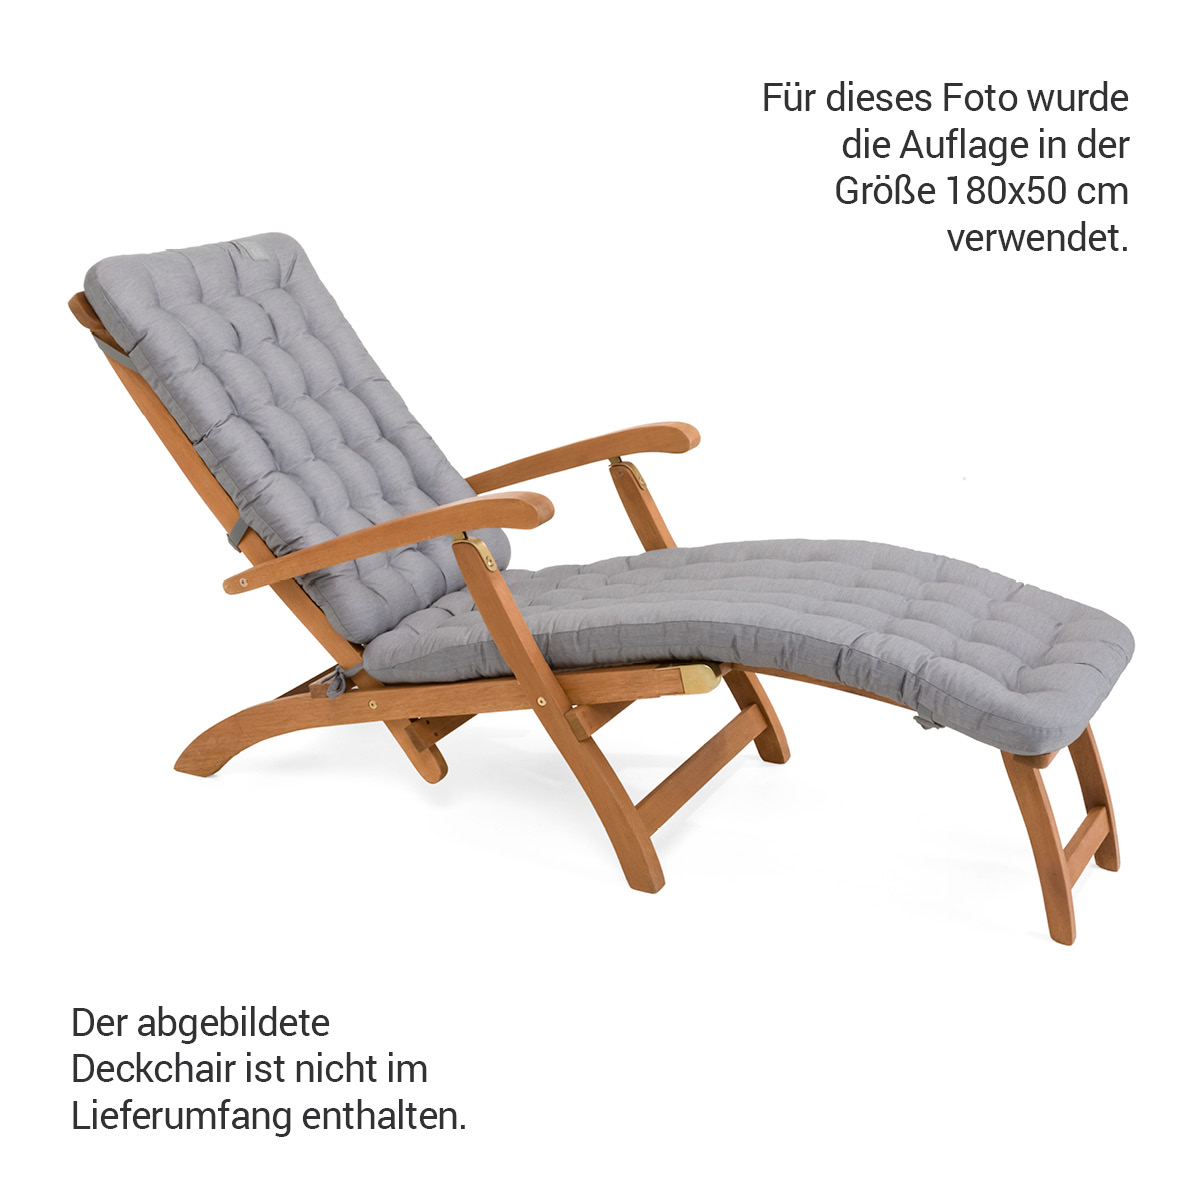 Premium HAVE A SEAT Living Auflage in hellgrau für Deckchair mit Luxus-Polsterung 8 cm Dick | bequem, orthopädisch, passgenau für Relaxstühle